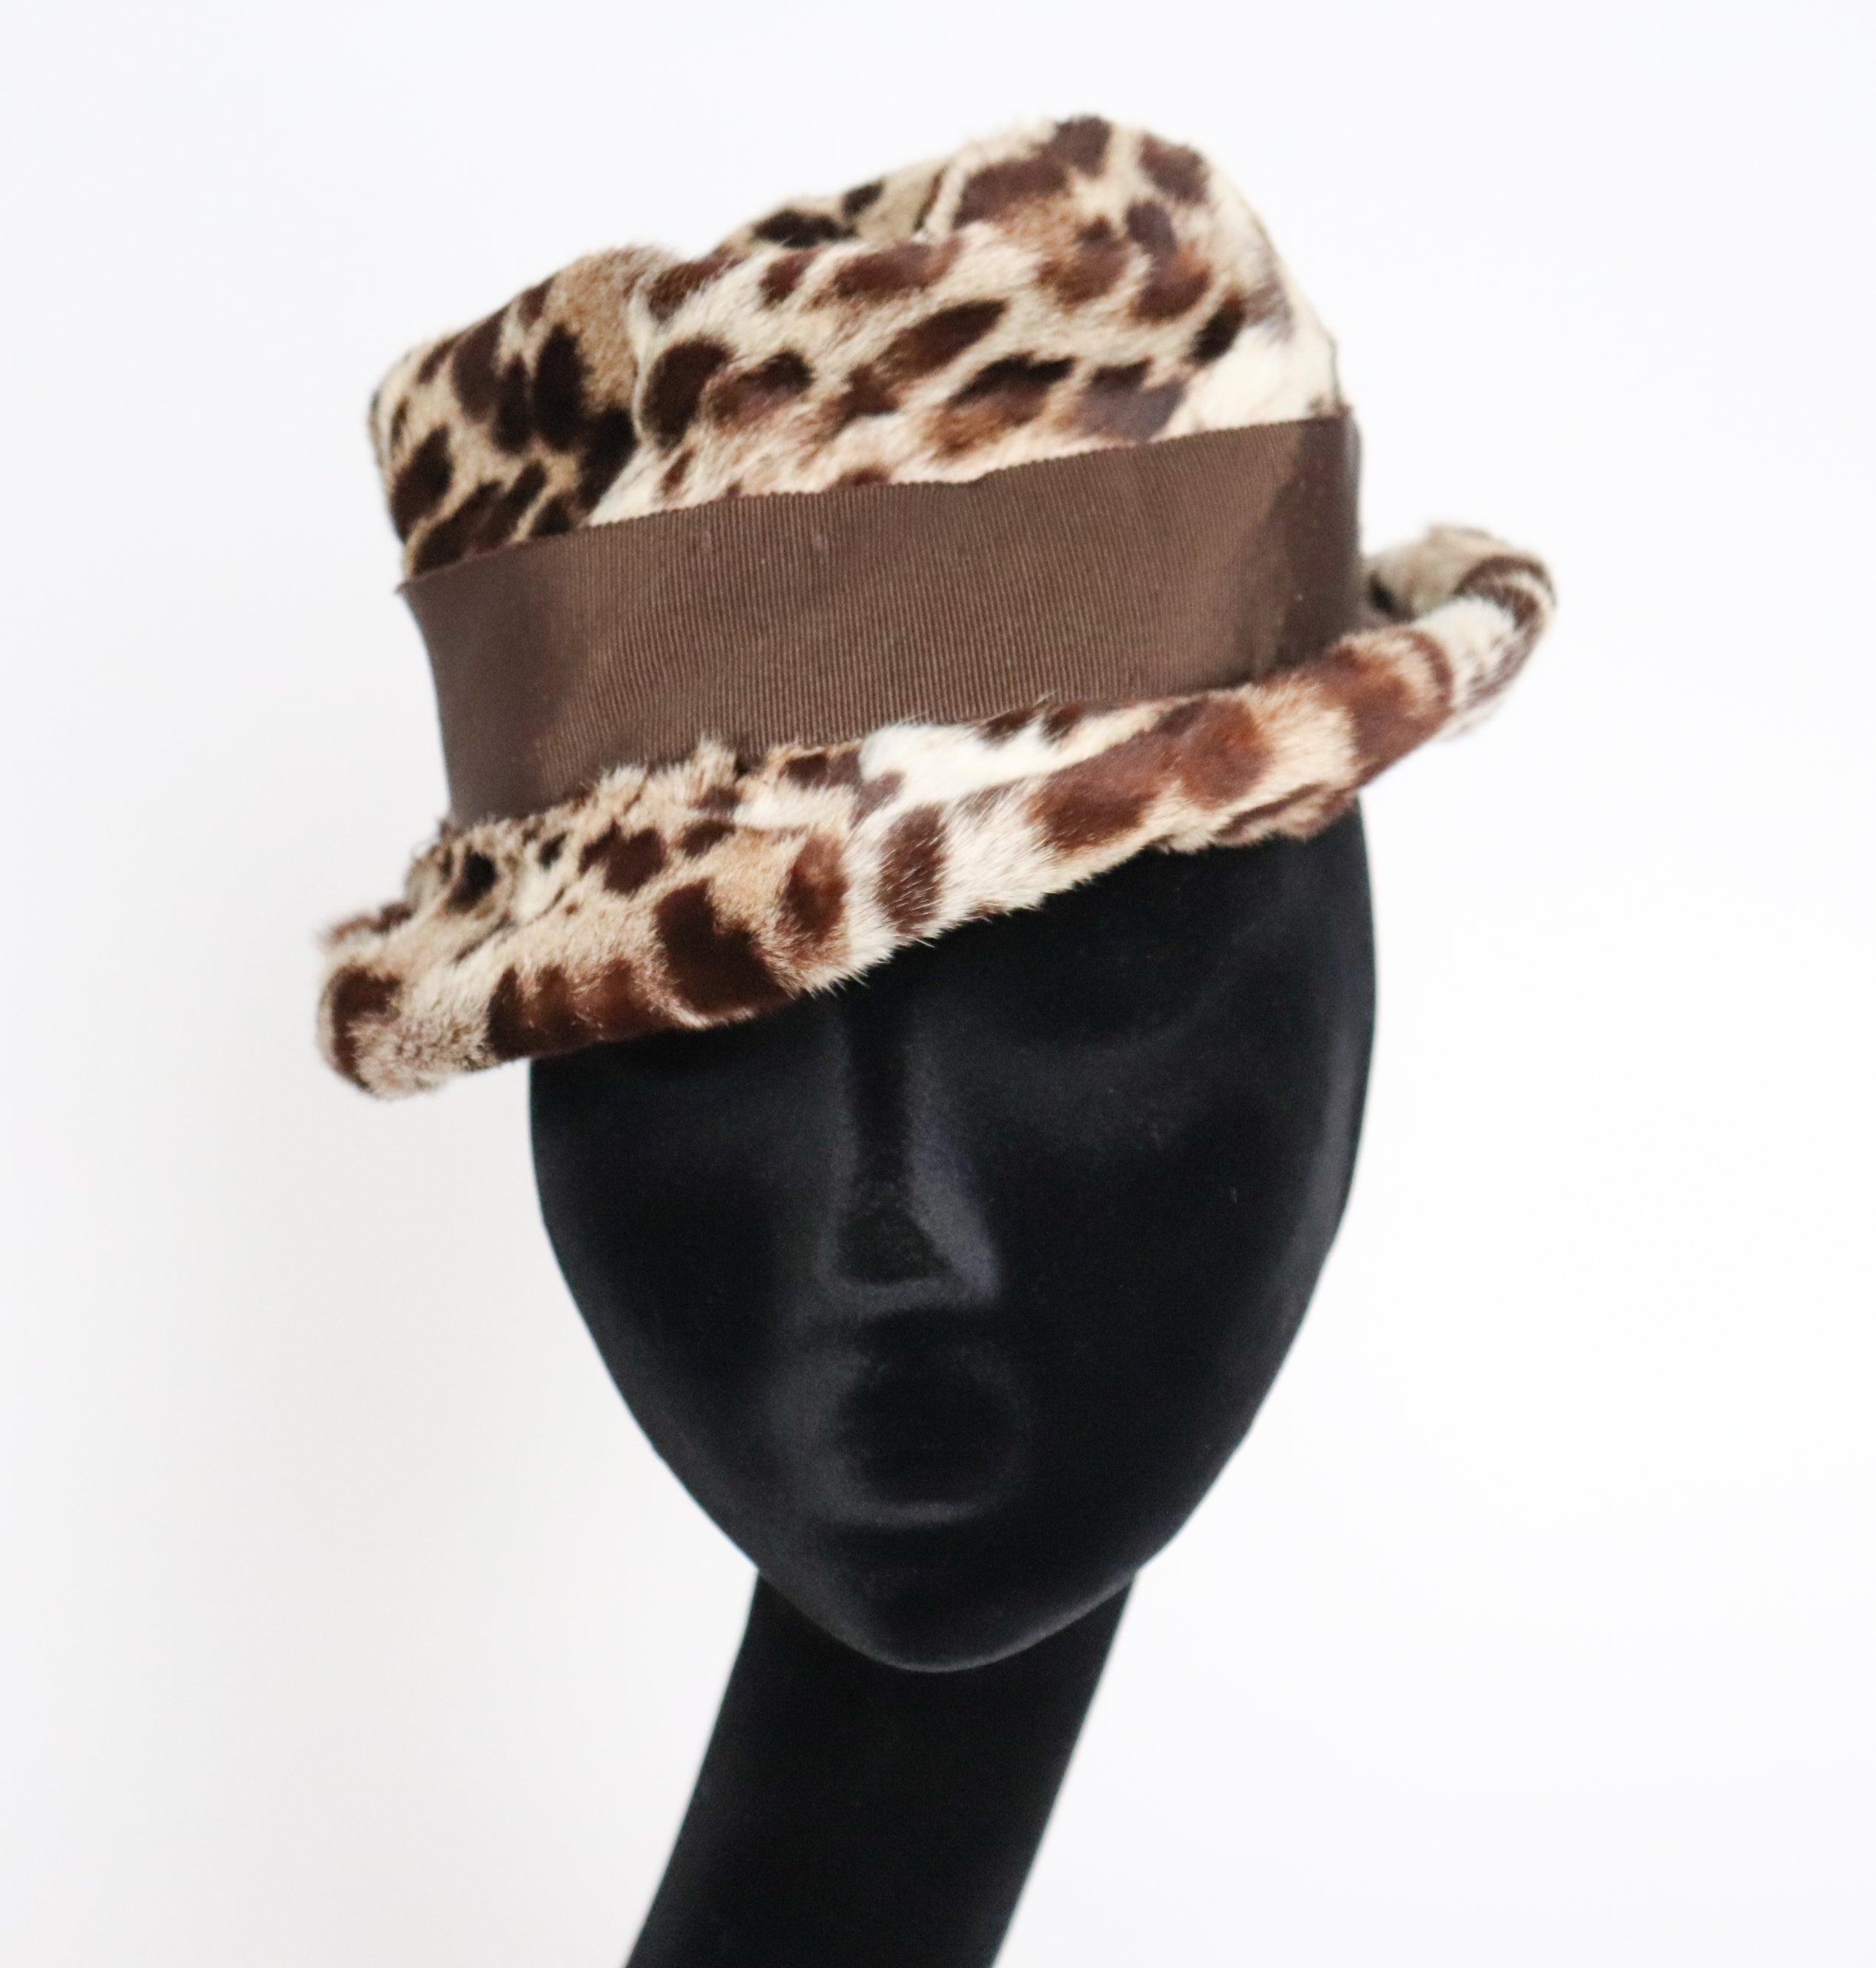 Leopard Print Fur Hat - Small Brim Hat - 1960s Brown - XS / Small